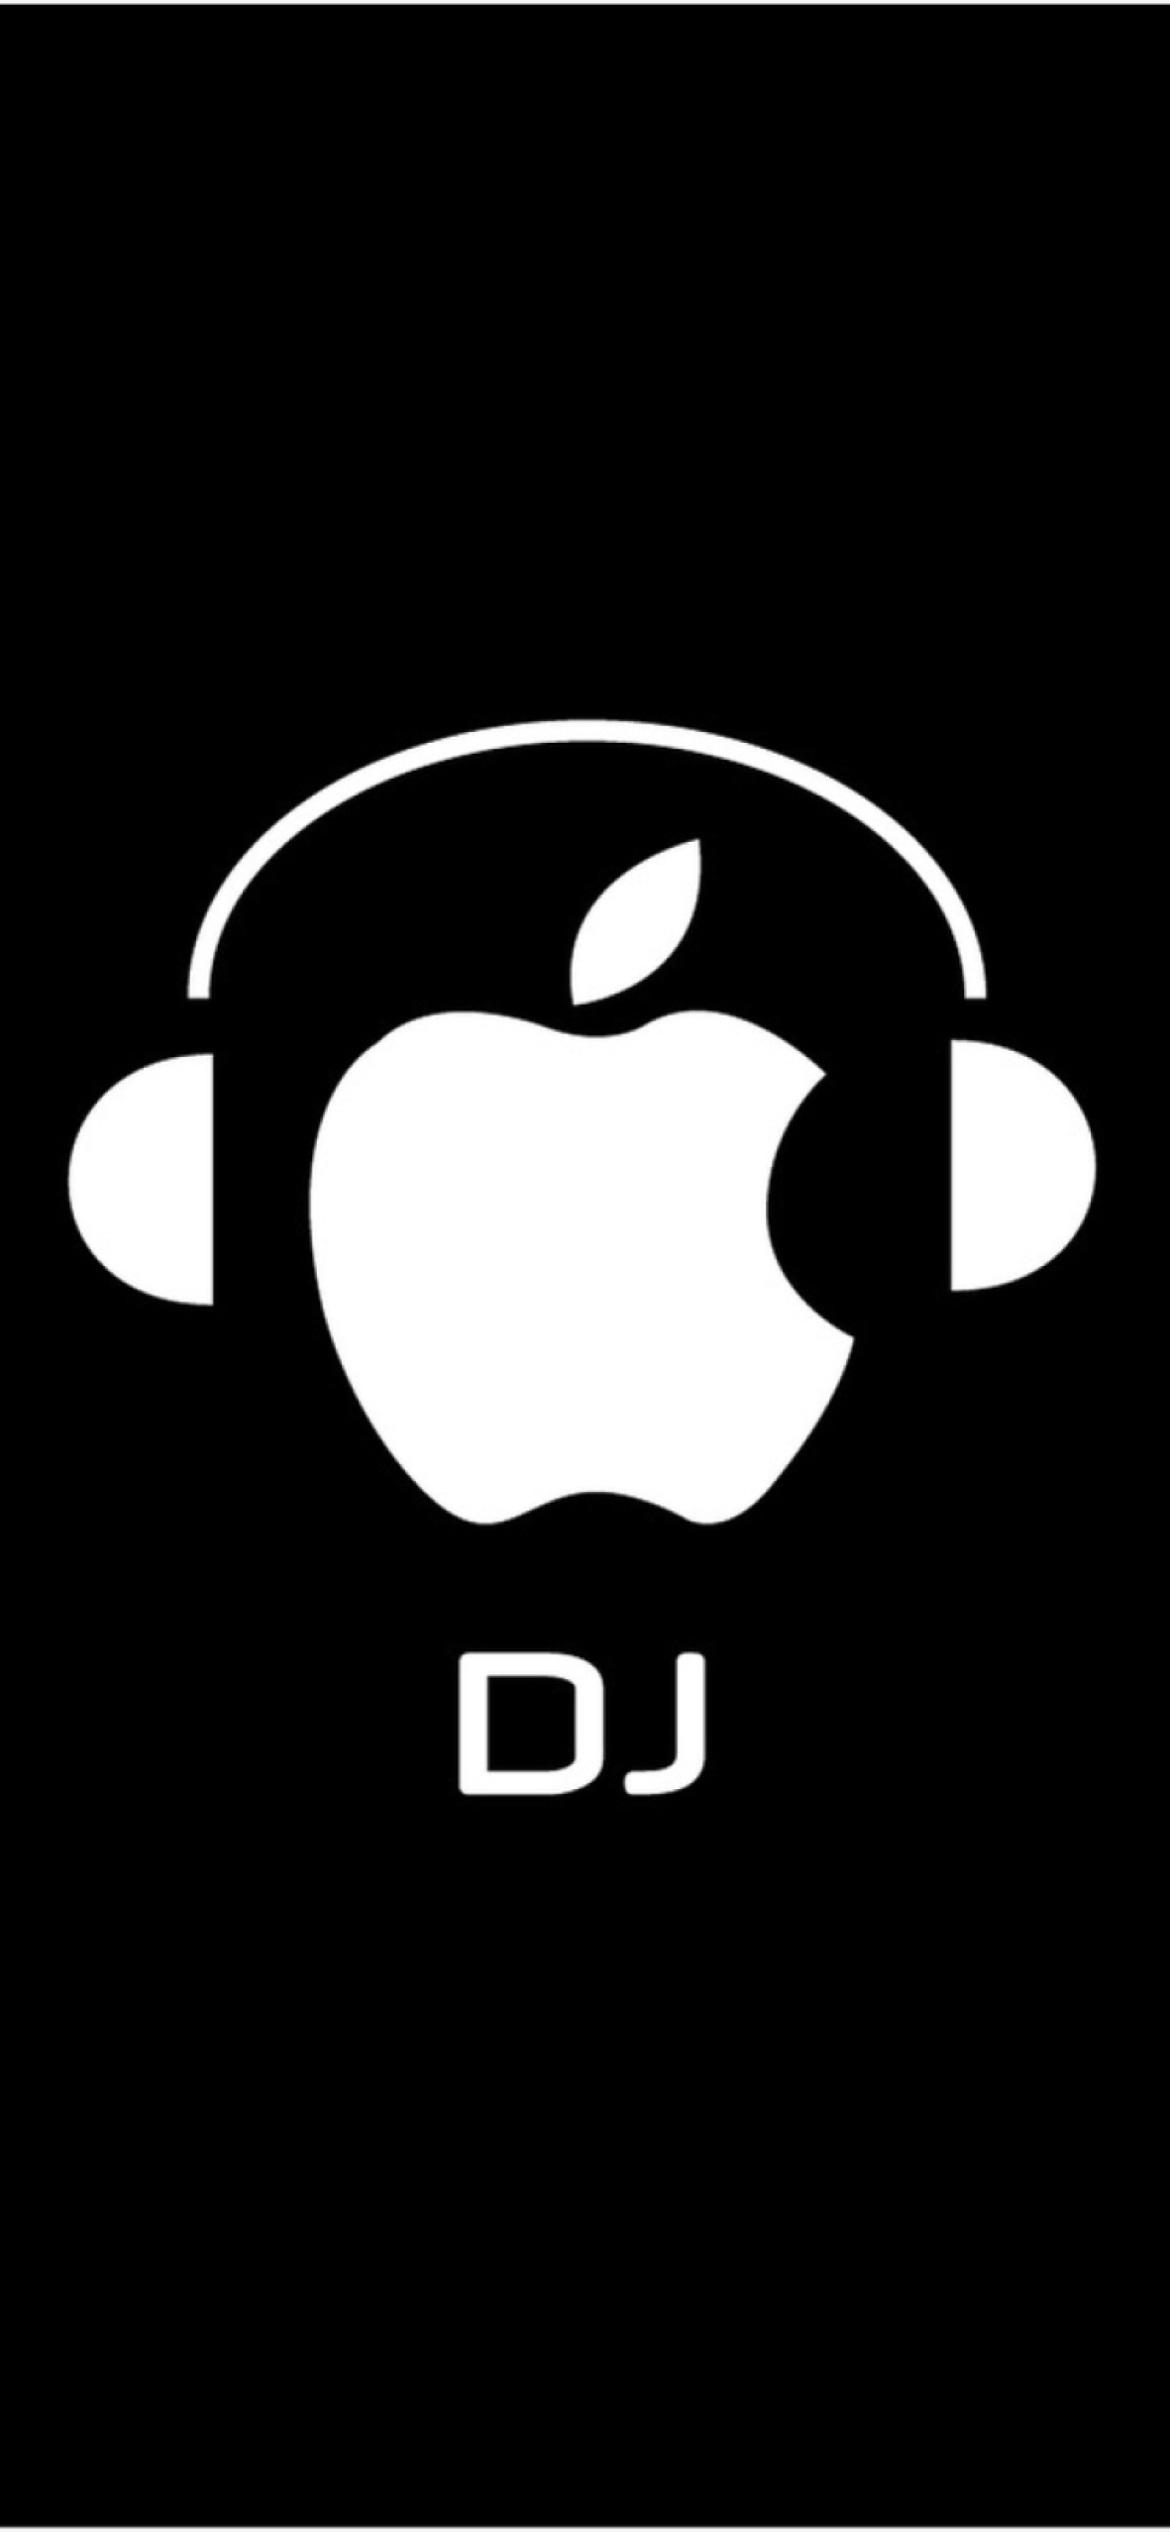 Apple DJ wallpaper 1170x2532